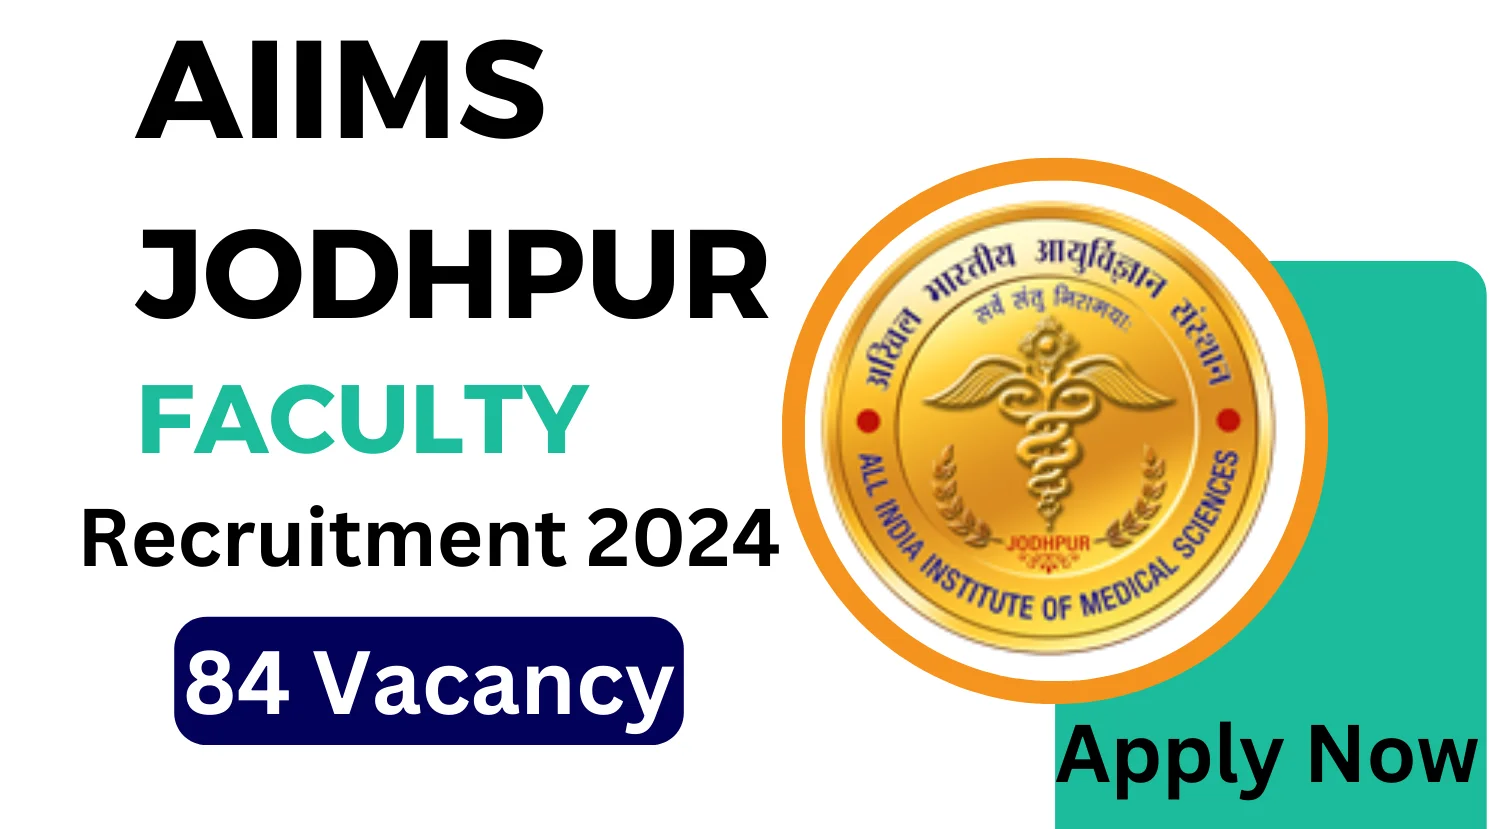 AIIMS Jodhpur Recruitment 2024 Notification Out